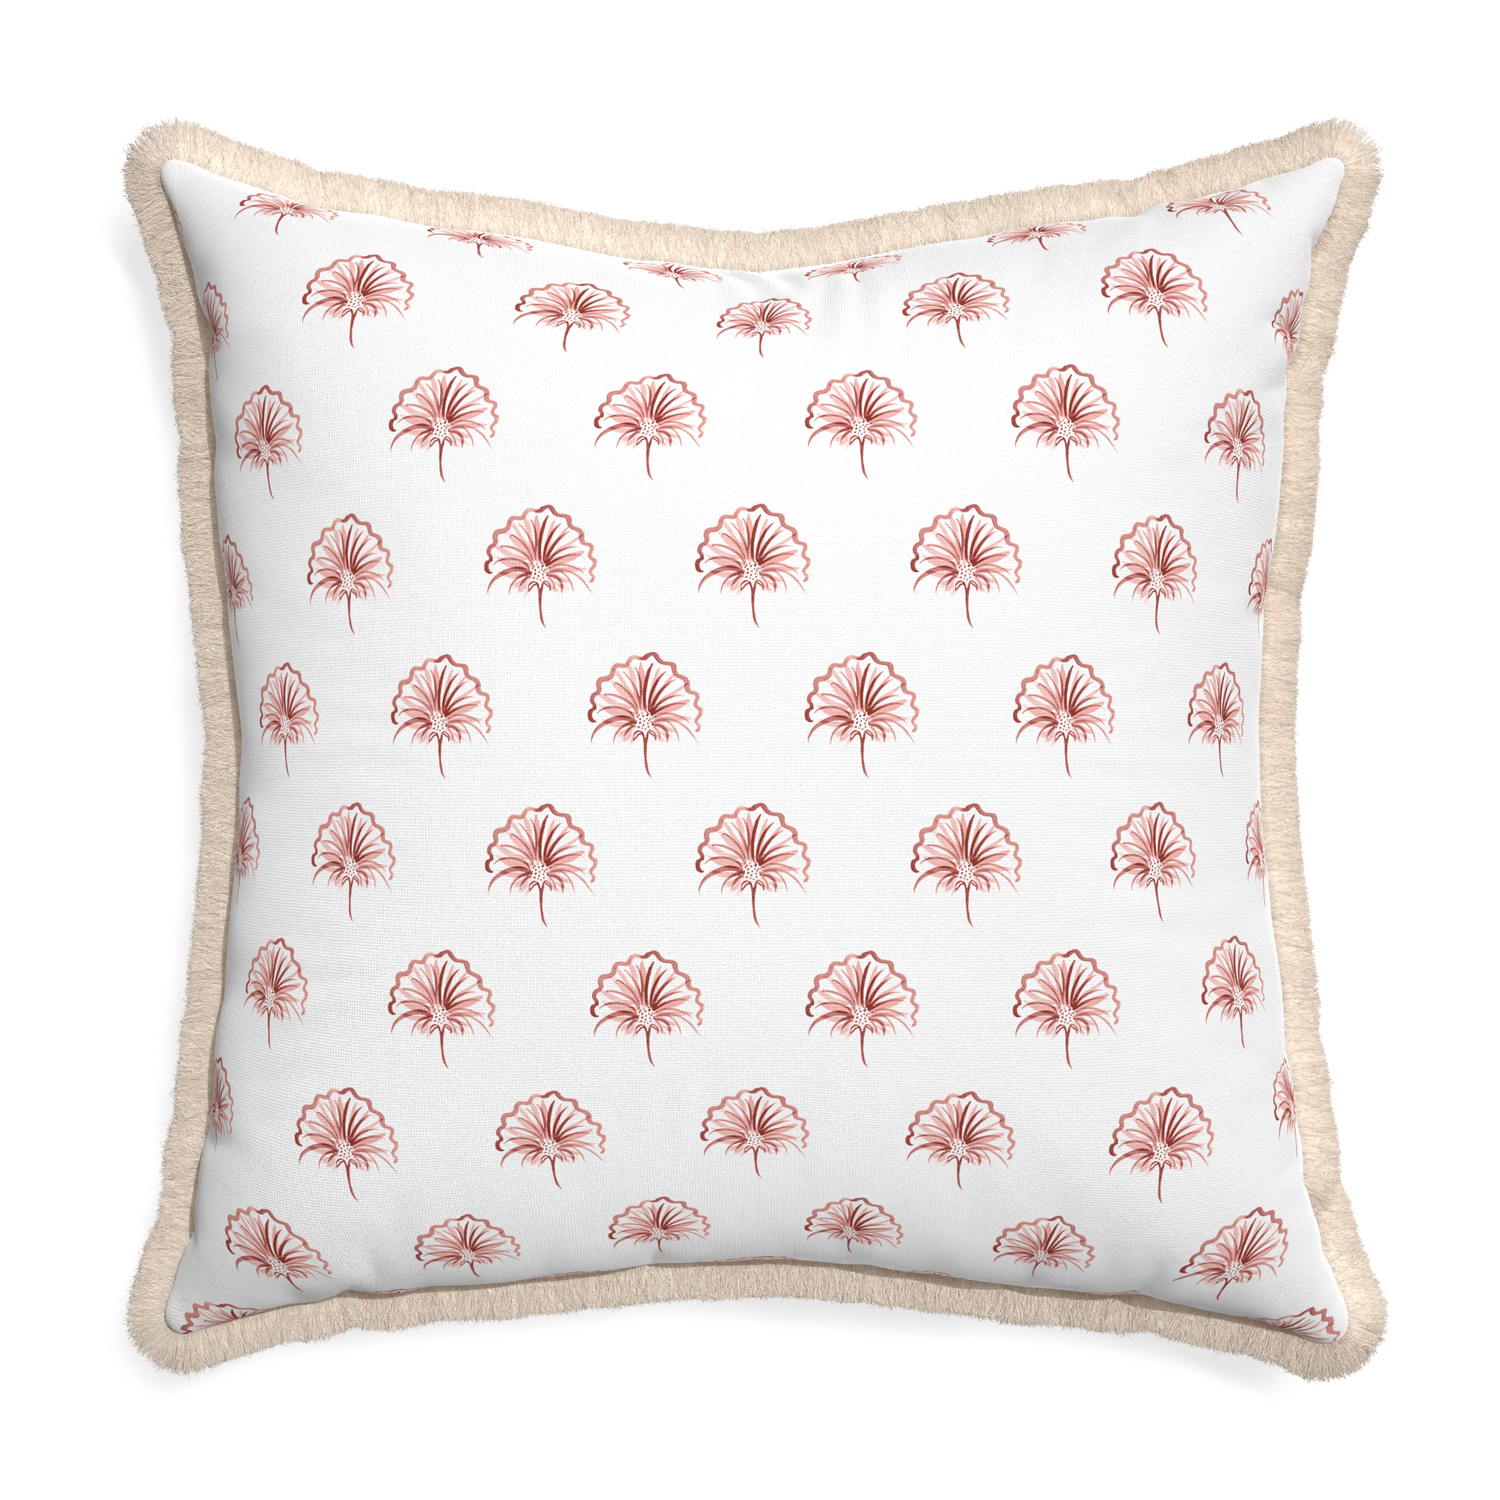 Euro-sham penelope rose custom pillow with cream fringe on white background